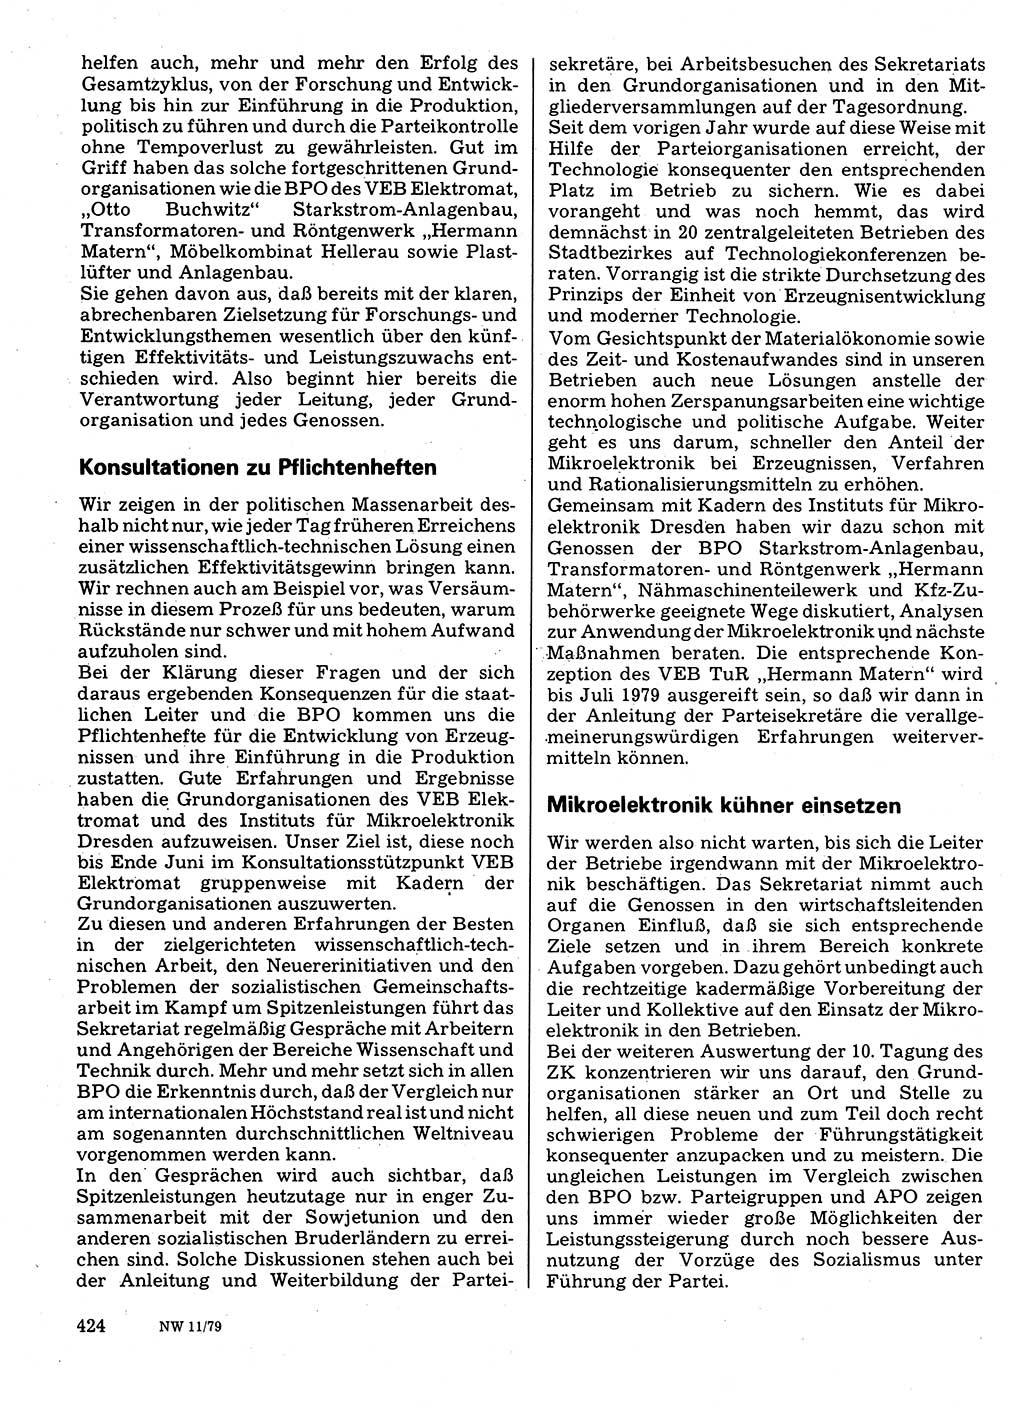 Neuer Weg (NW), Organ des Zentralkomitees (ZK) der SED (Sozialistische Einheitspartei Deutschlands) für Fragen des Parteilebens, 34. Jahrgang [Deutsche Demokratische Republik (DDR)] 1979, Seite 424 (NW ZK SED DDR 1979, S. 424)